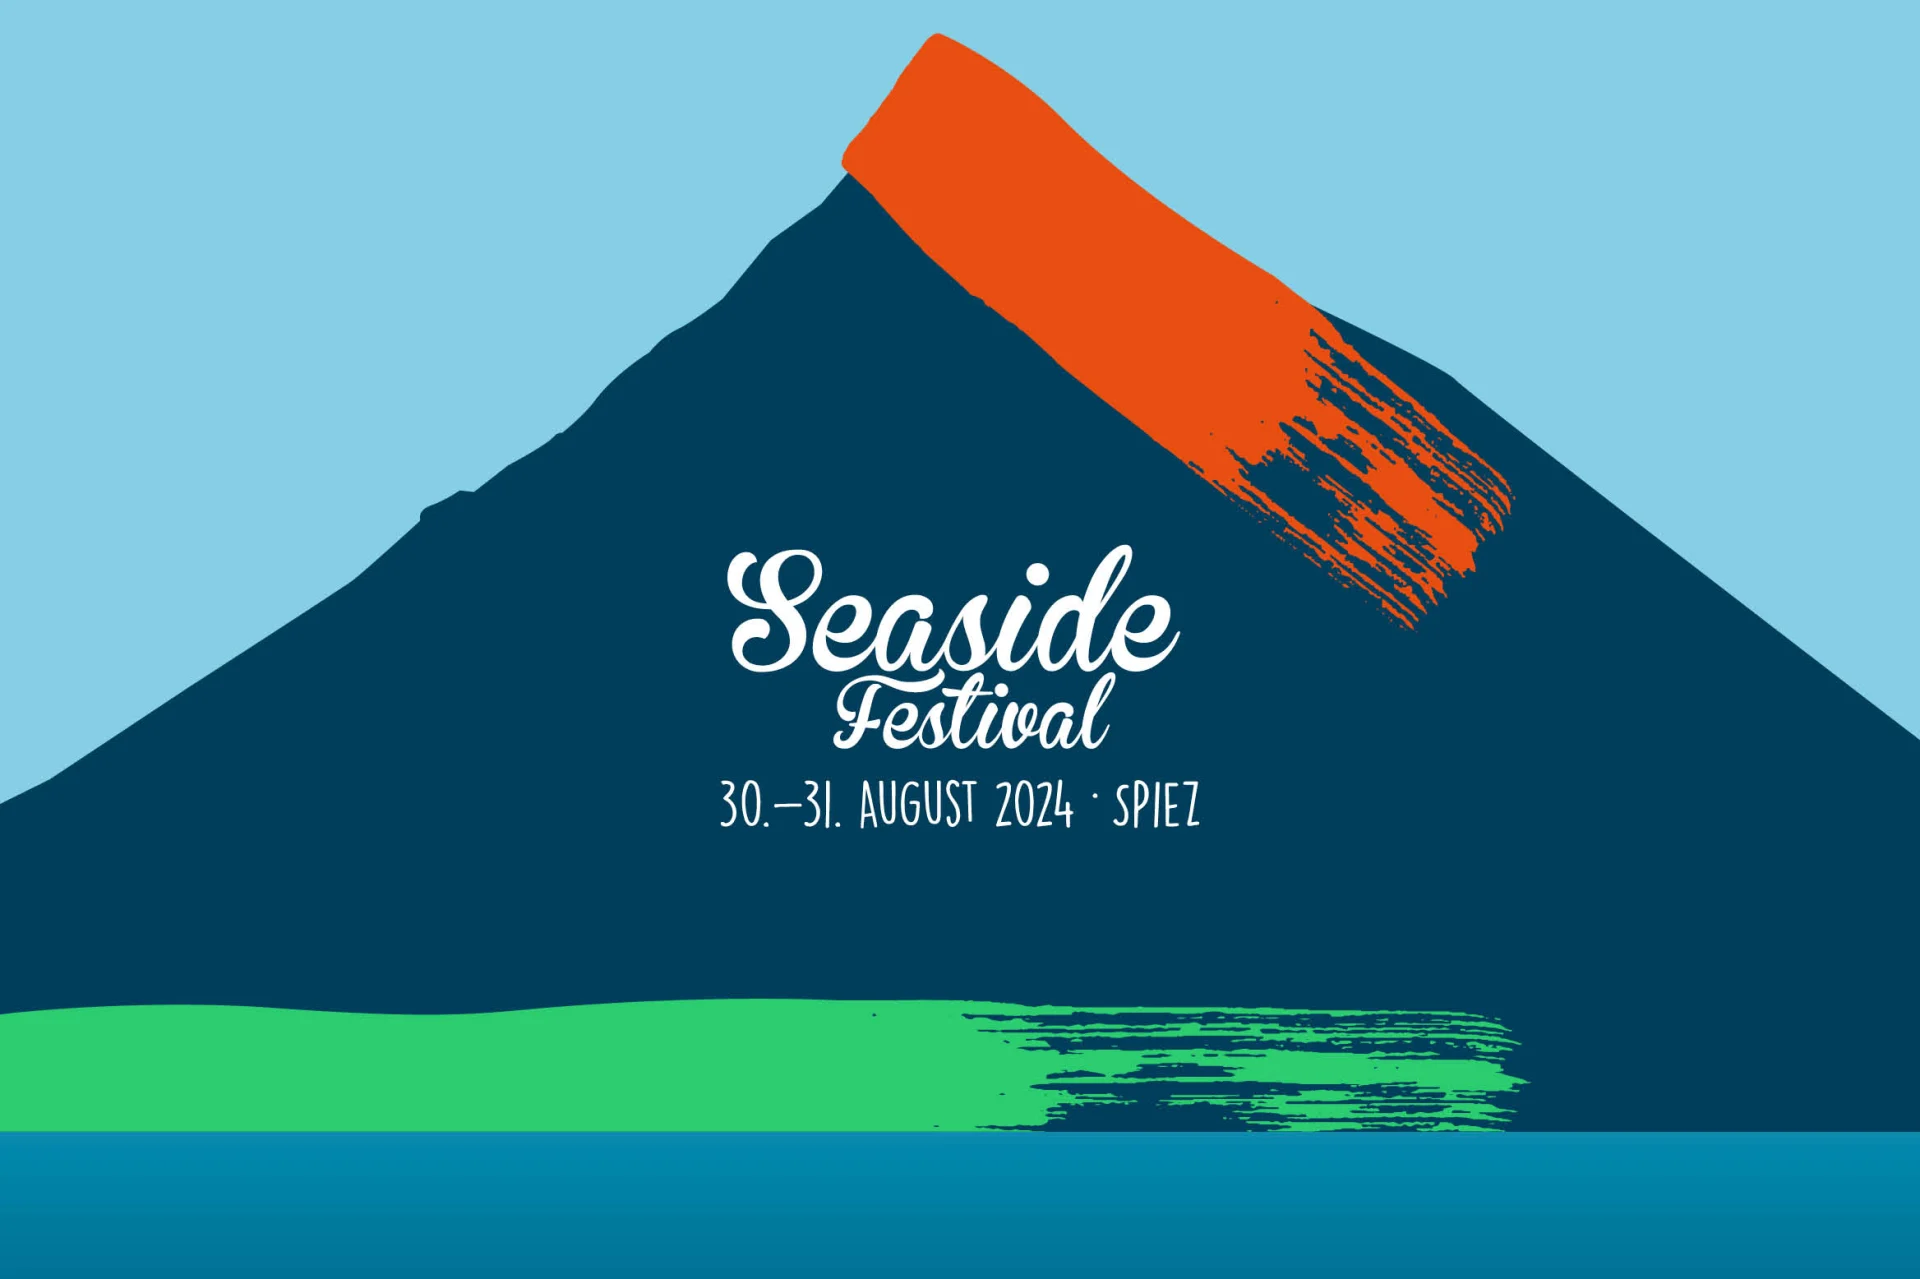 Logo du festival Seaside de Spiez